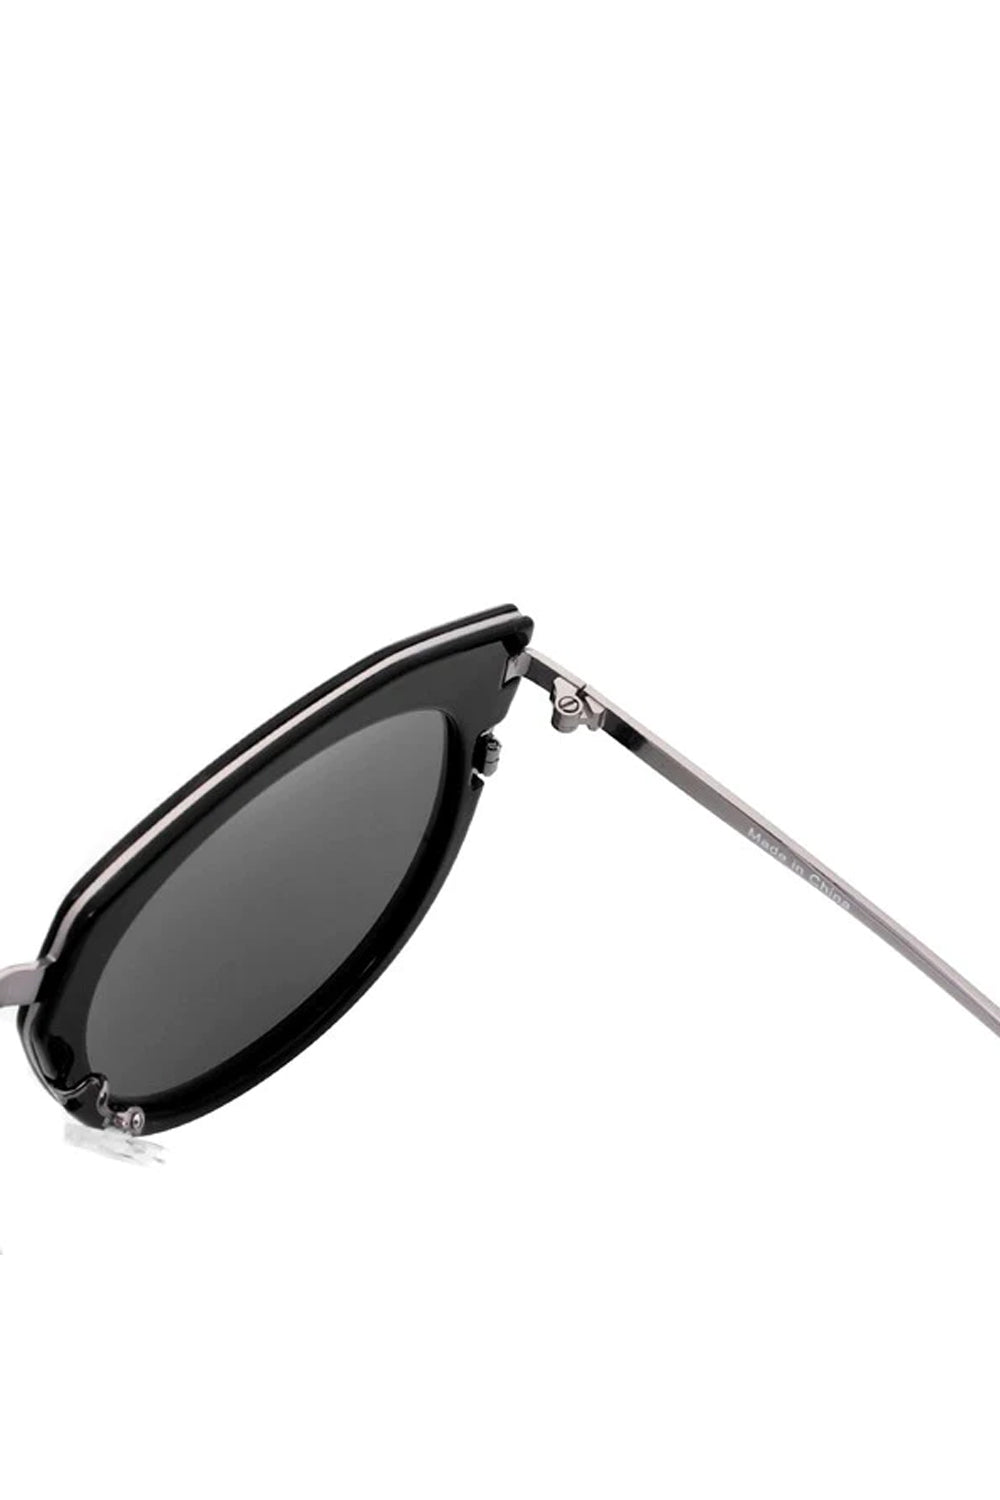 Women Oversize Cat Eye Fashion Sunglasses